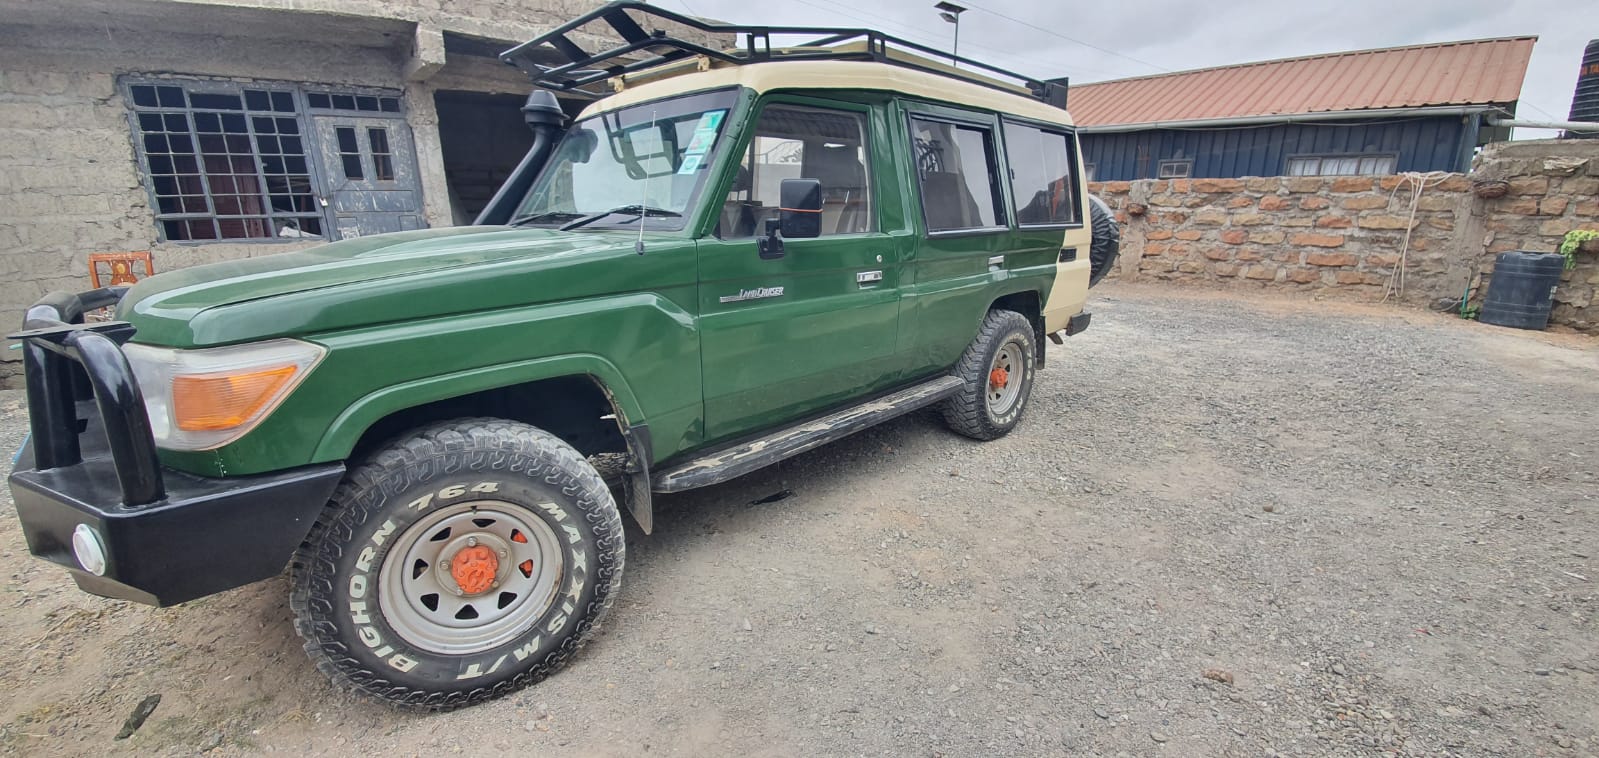  car rental with a driver4 Days Mikumi National Park, Uluguru Mountains and Maasai tour safari